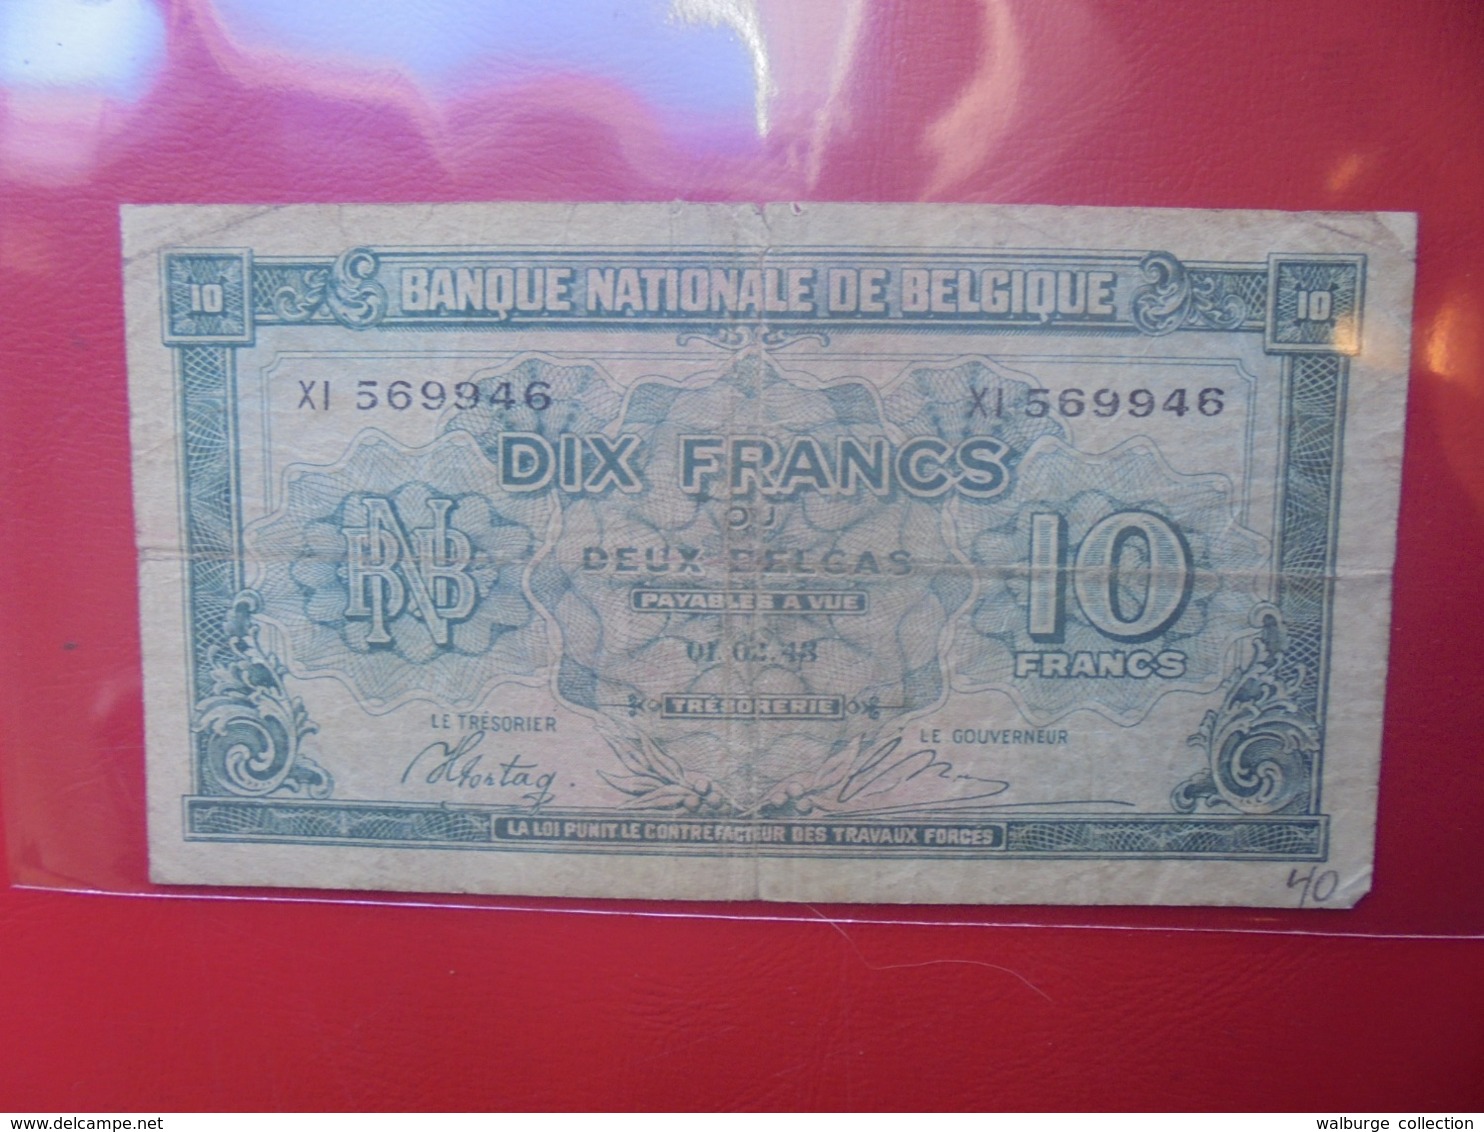 BELGIQUE 10 FRANCS 1943 CIRCULER - 10 Francs-2 Belgas